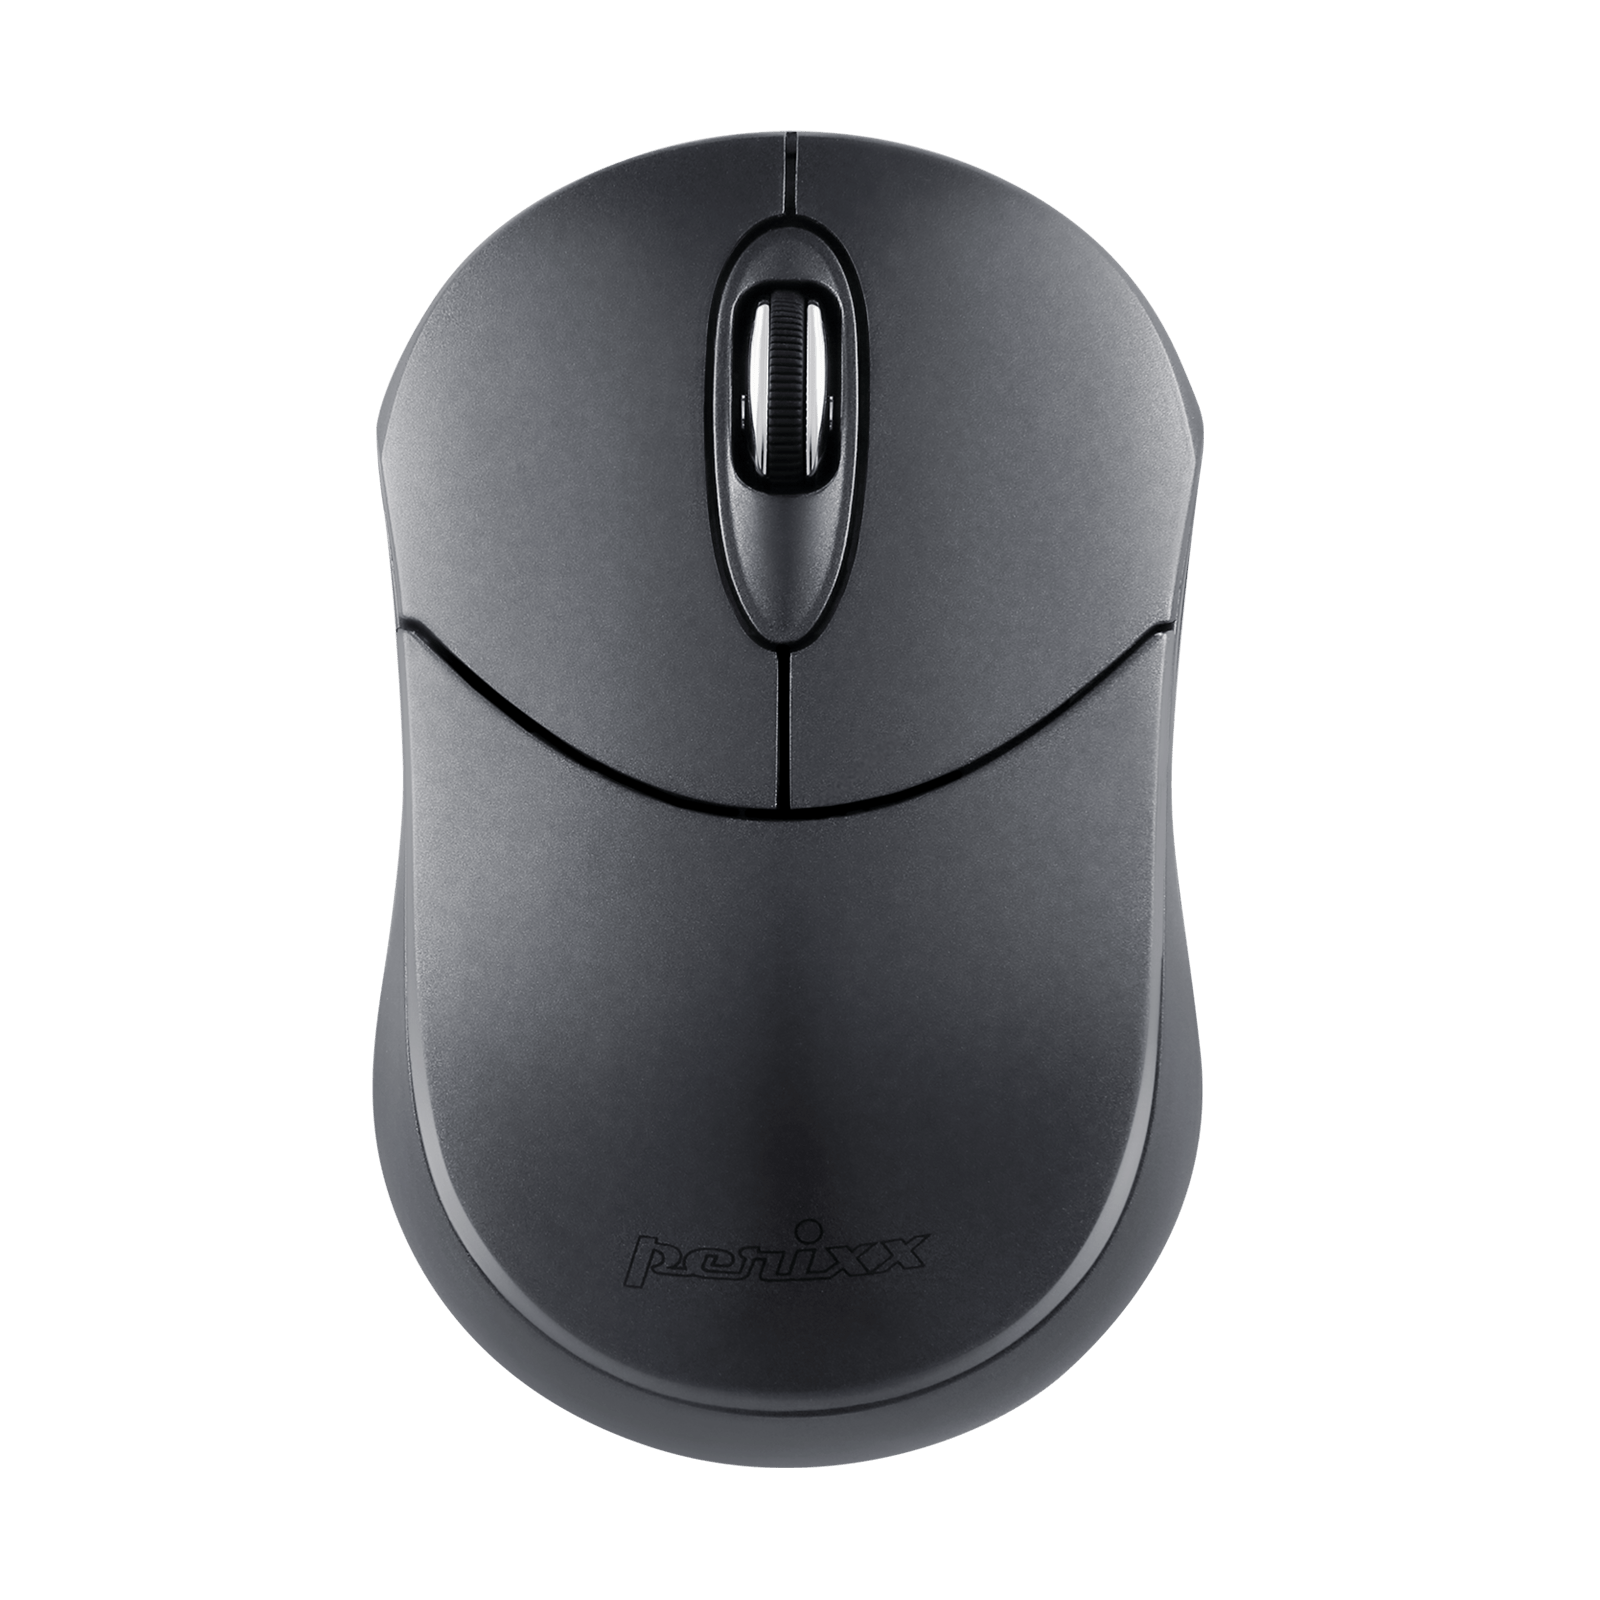 PERIMICE-802 G - Bluetooth Mini Mouse 1000 DPI - Graphite - Perixx Europe